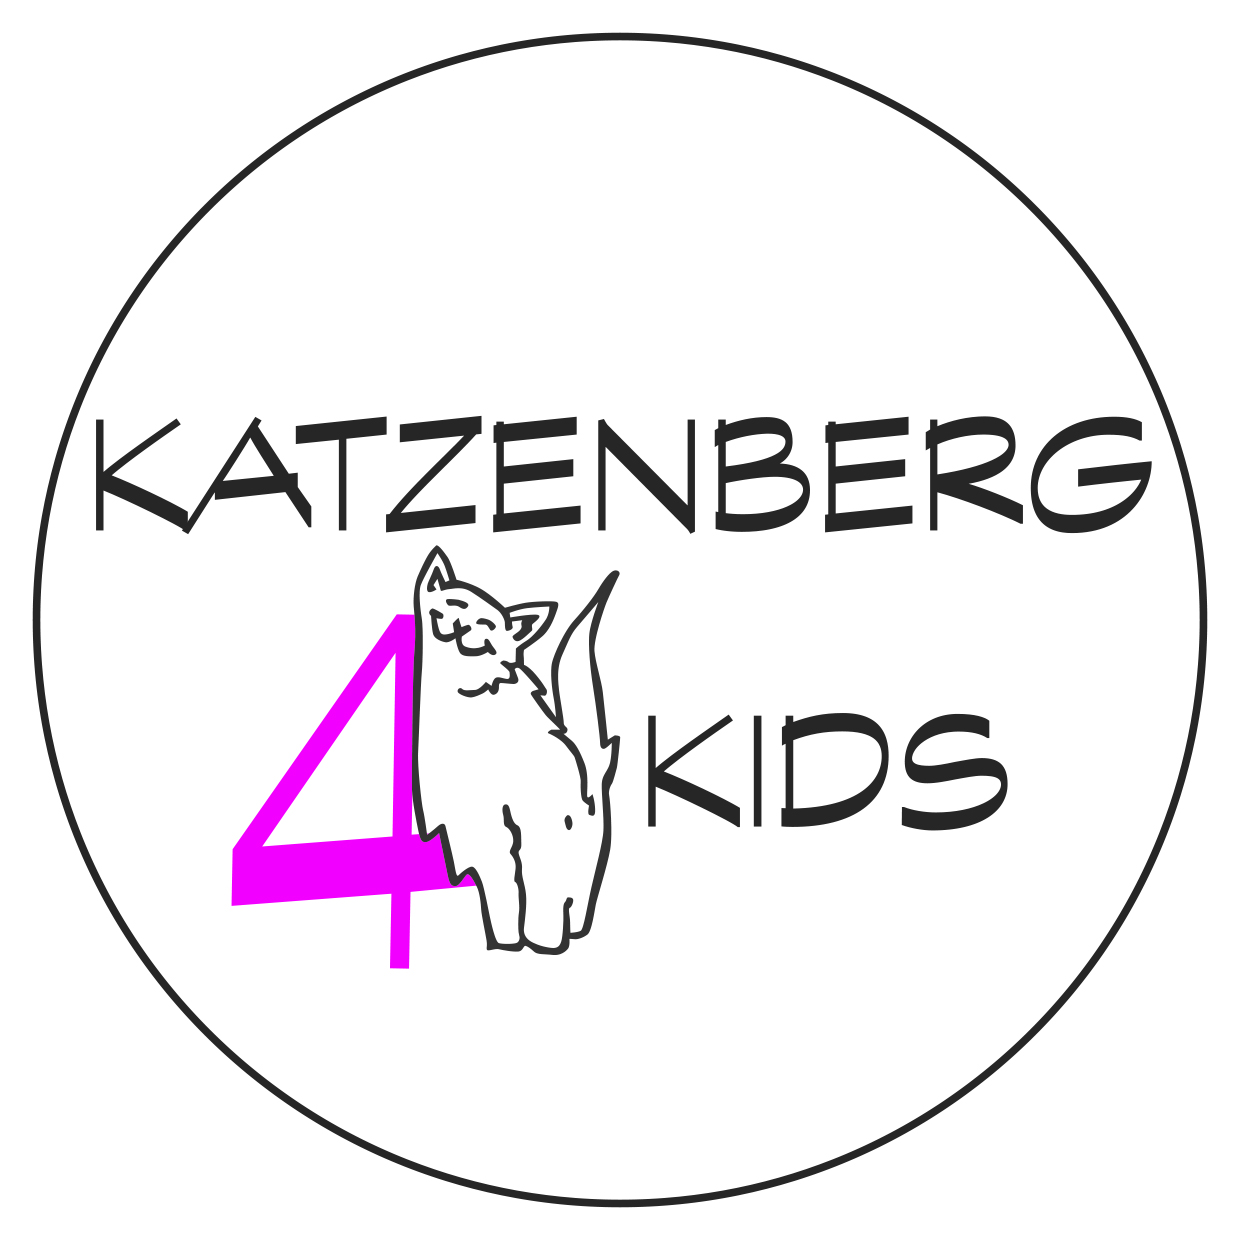 Katzenberg 4 Kids